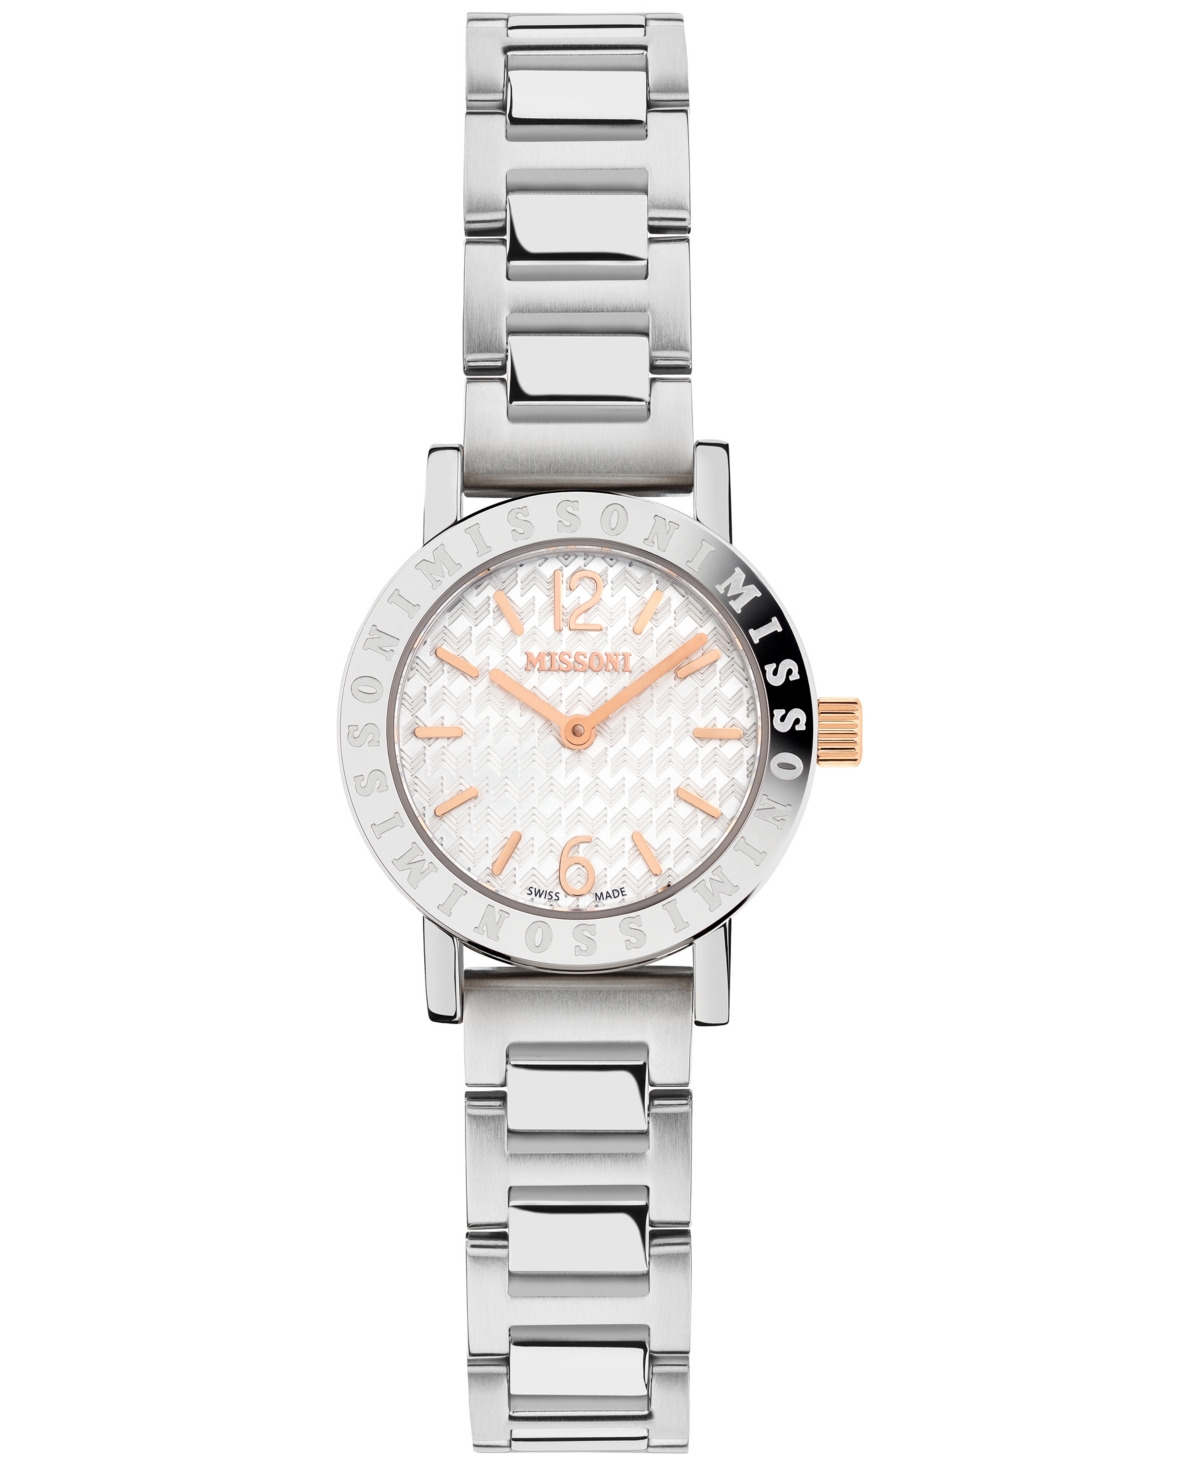 Missoni Women's Swiss Estate Stainless Steel Bracelet Watch 27mm Gift Set